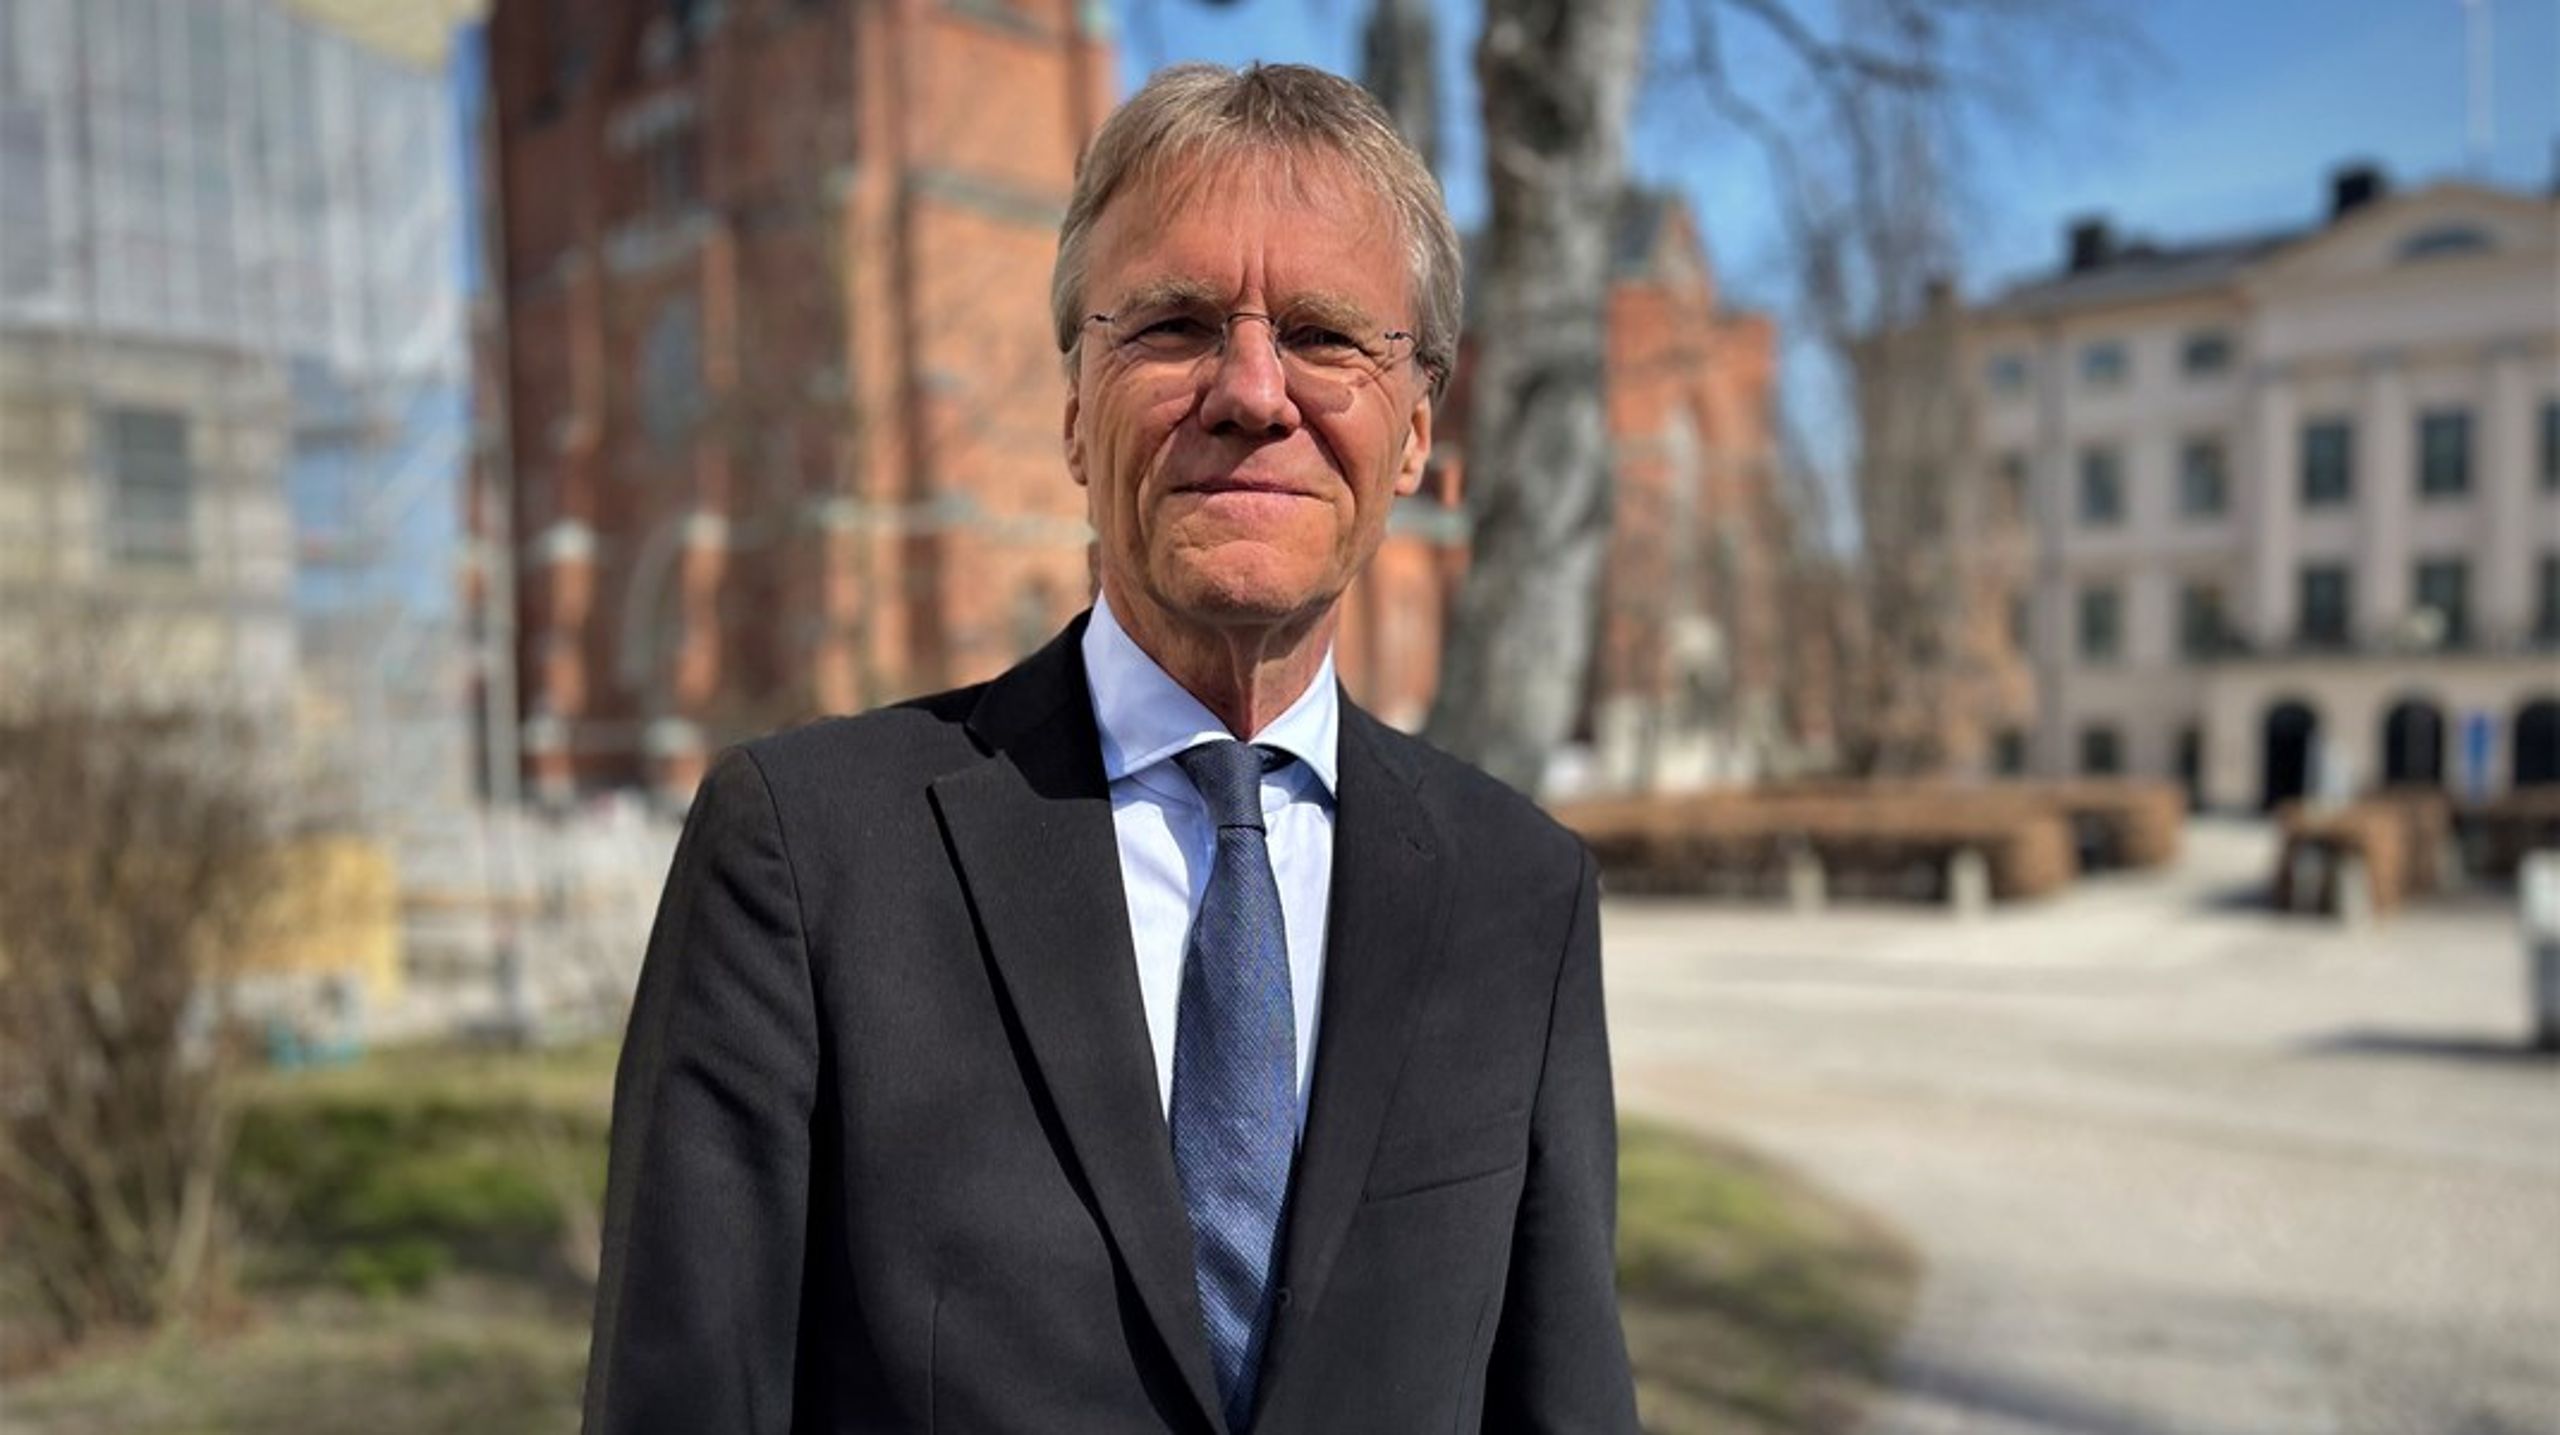 Göran Enander var tills nyligen landshövding i Uppsala län. Han har tidigare bland annat varit generaldirektör för Skogsstyrelsen och ordförande för Naturskyddsföreningen.